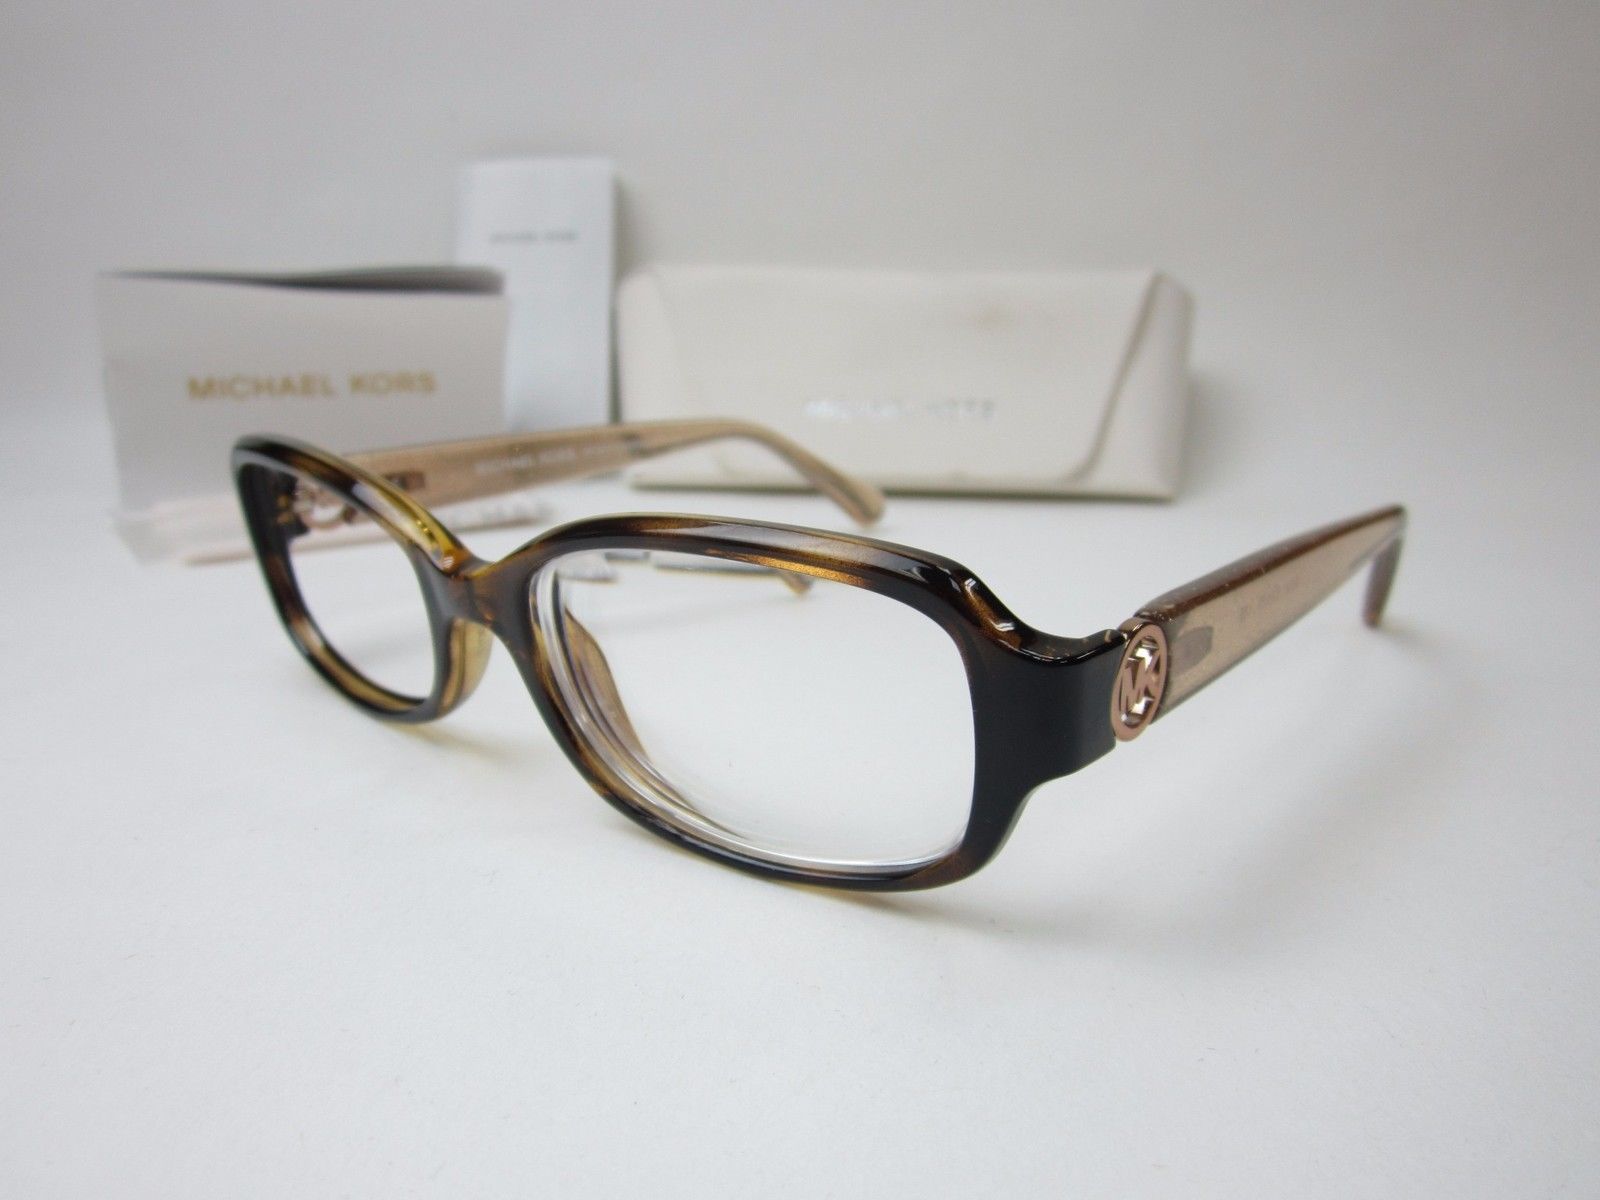 Authentic Michael Kors Mk8016 3104 Women S Eyeglasses 50 17 135 Shh156 Eyeglass Frames